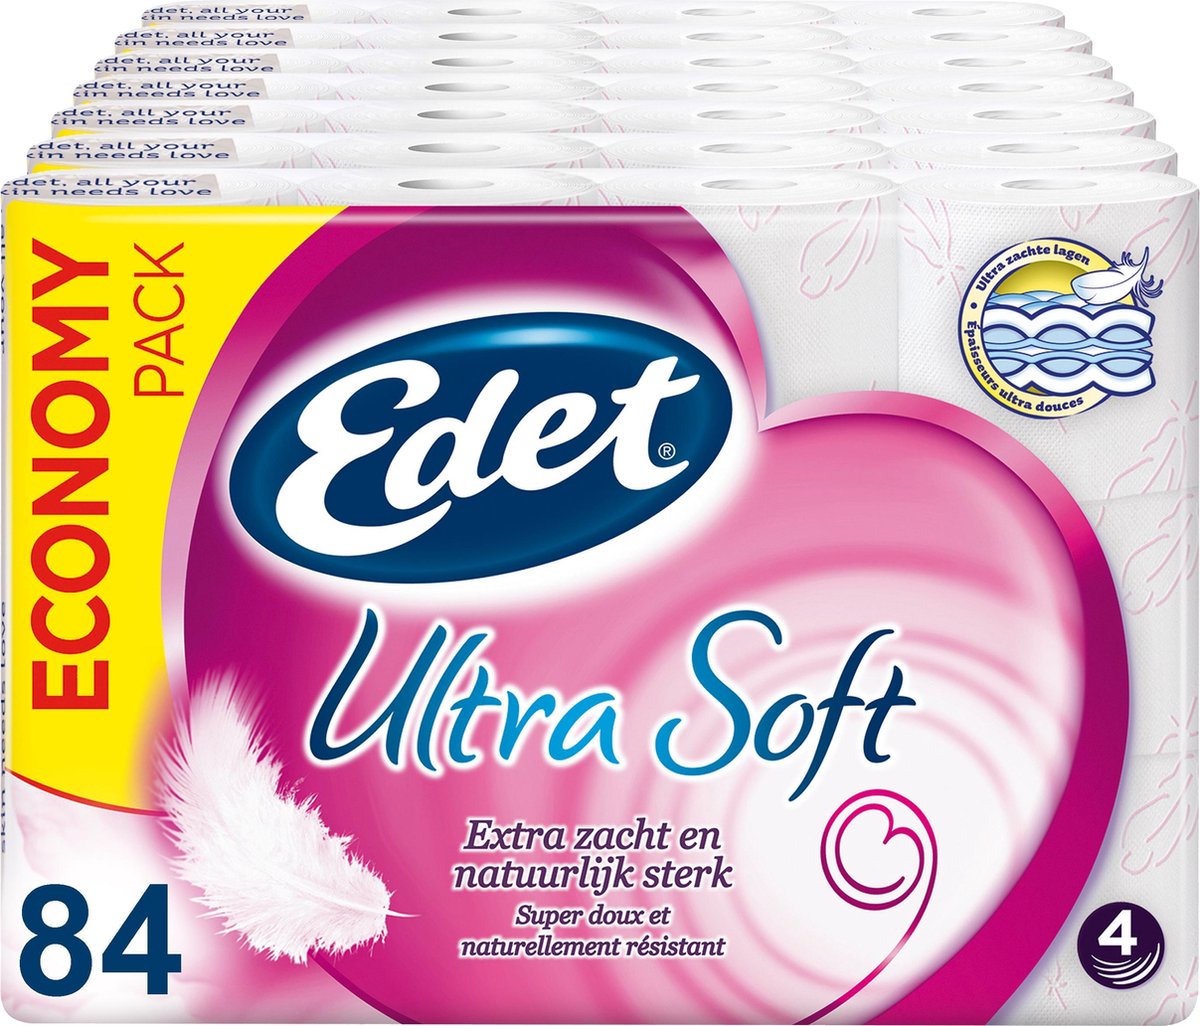 Edet Ultra Soft 4-laags wc papier - 84 rollen - Edet